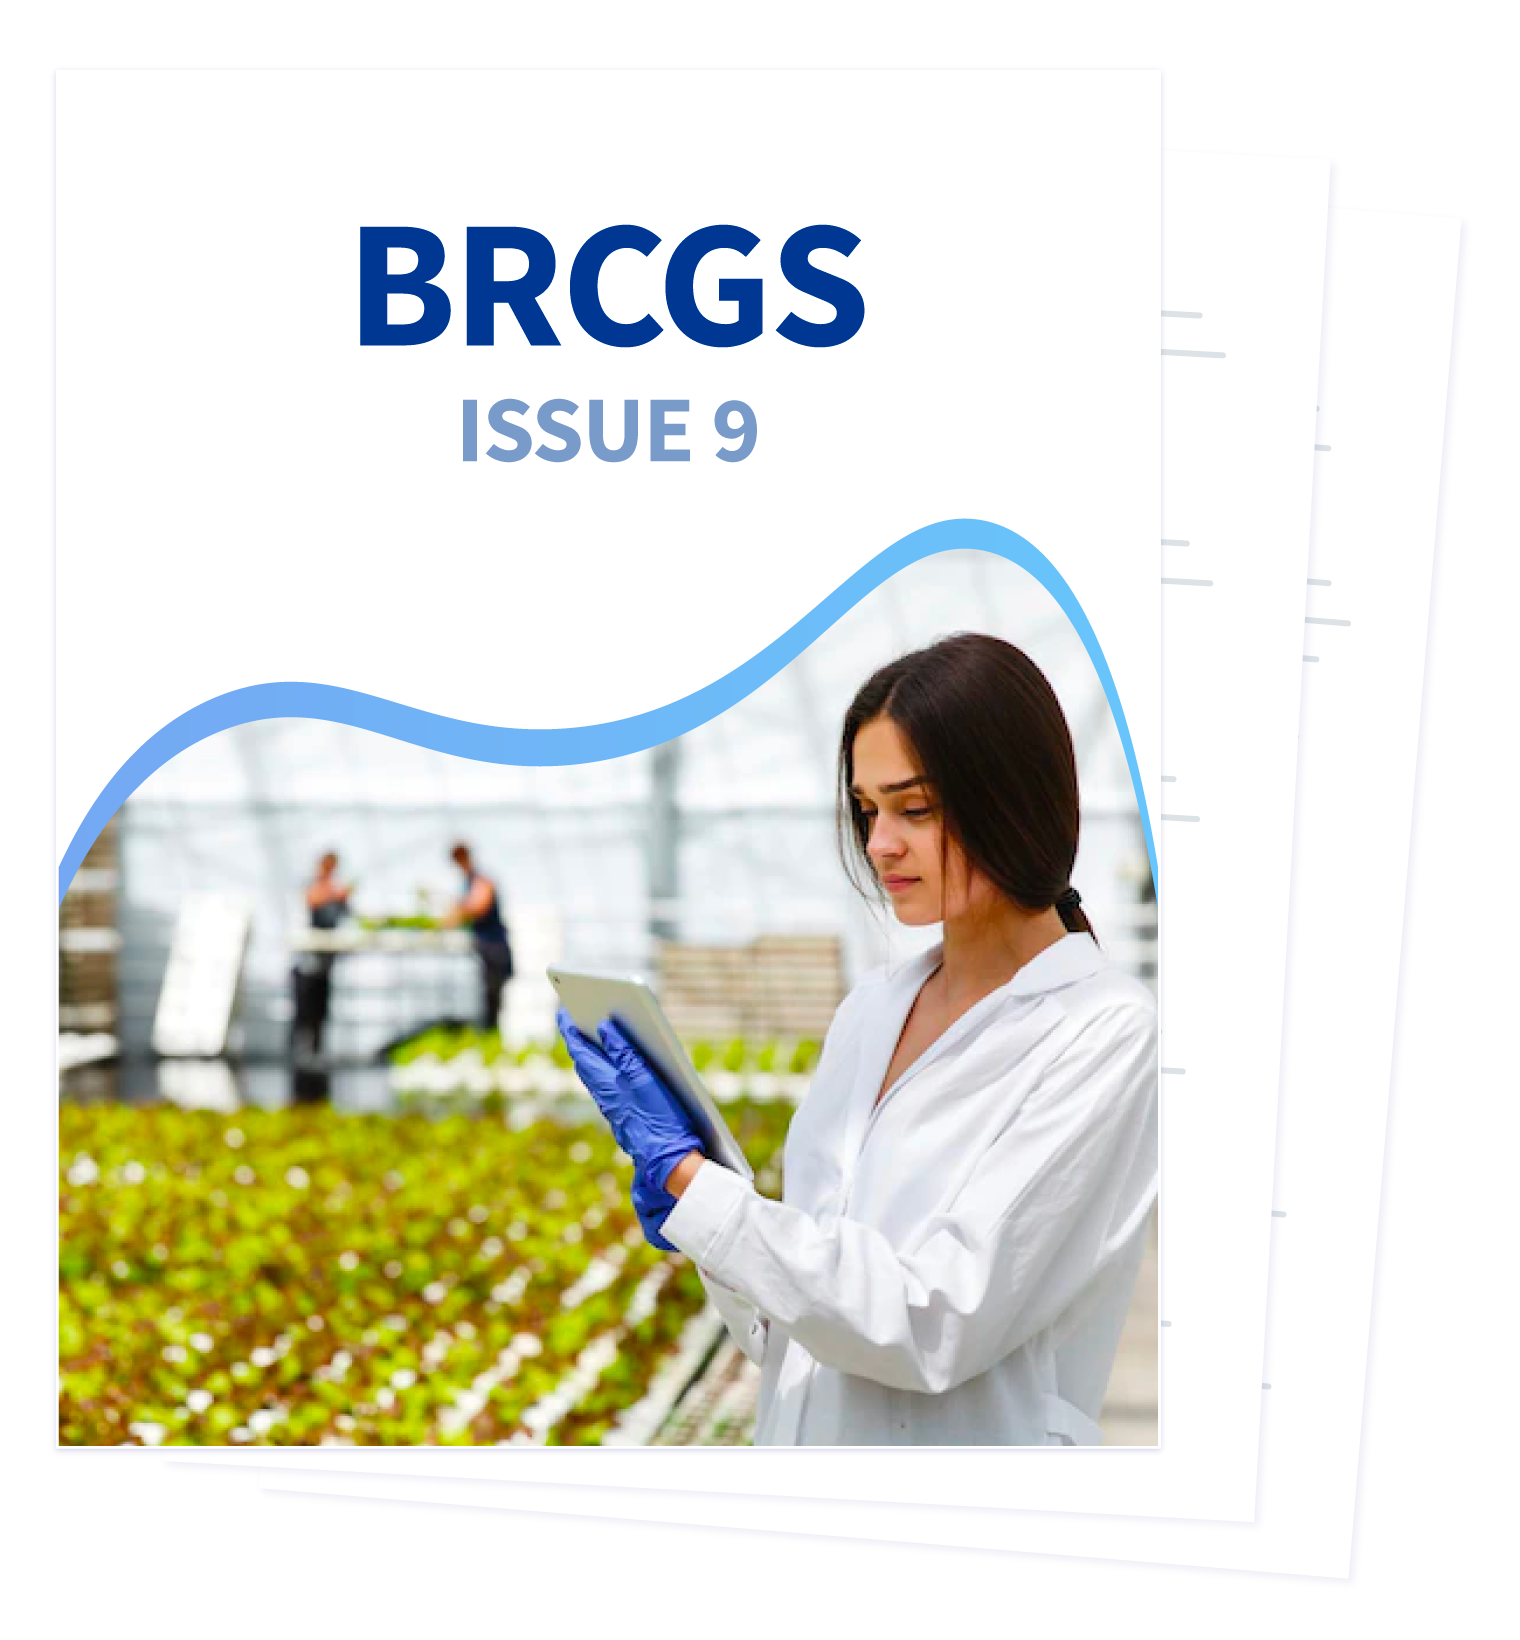 BRCGS Issue 9